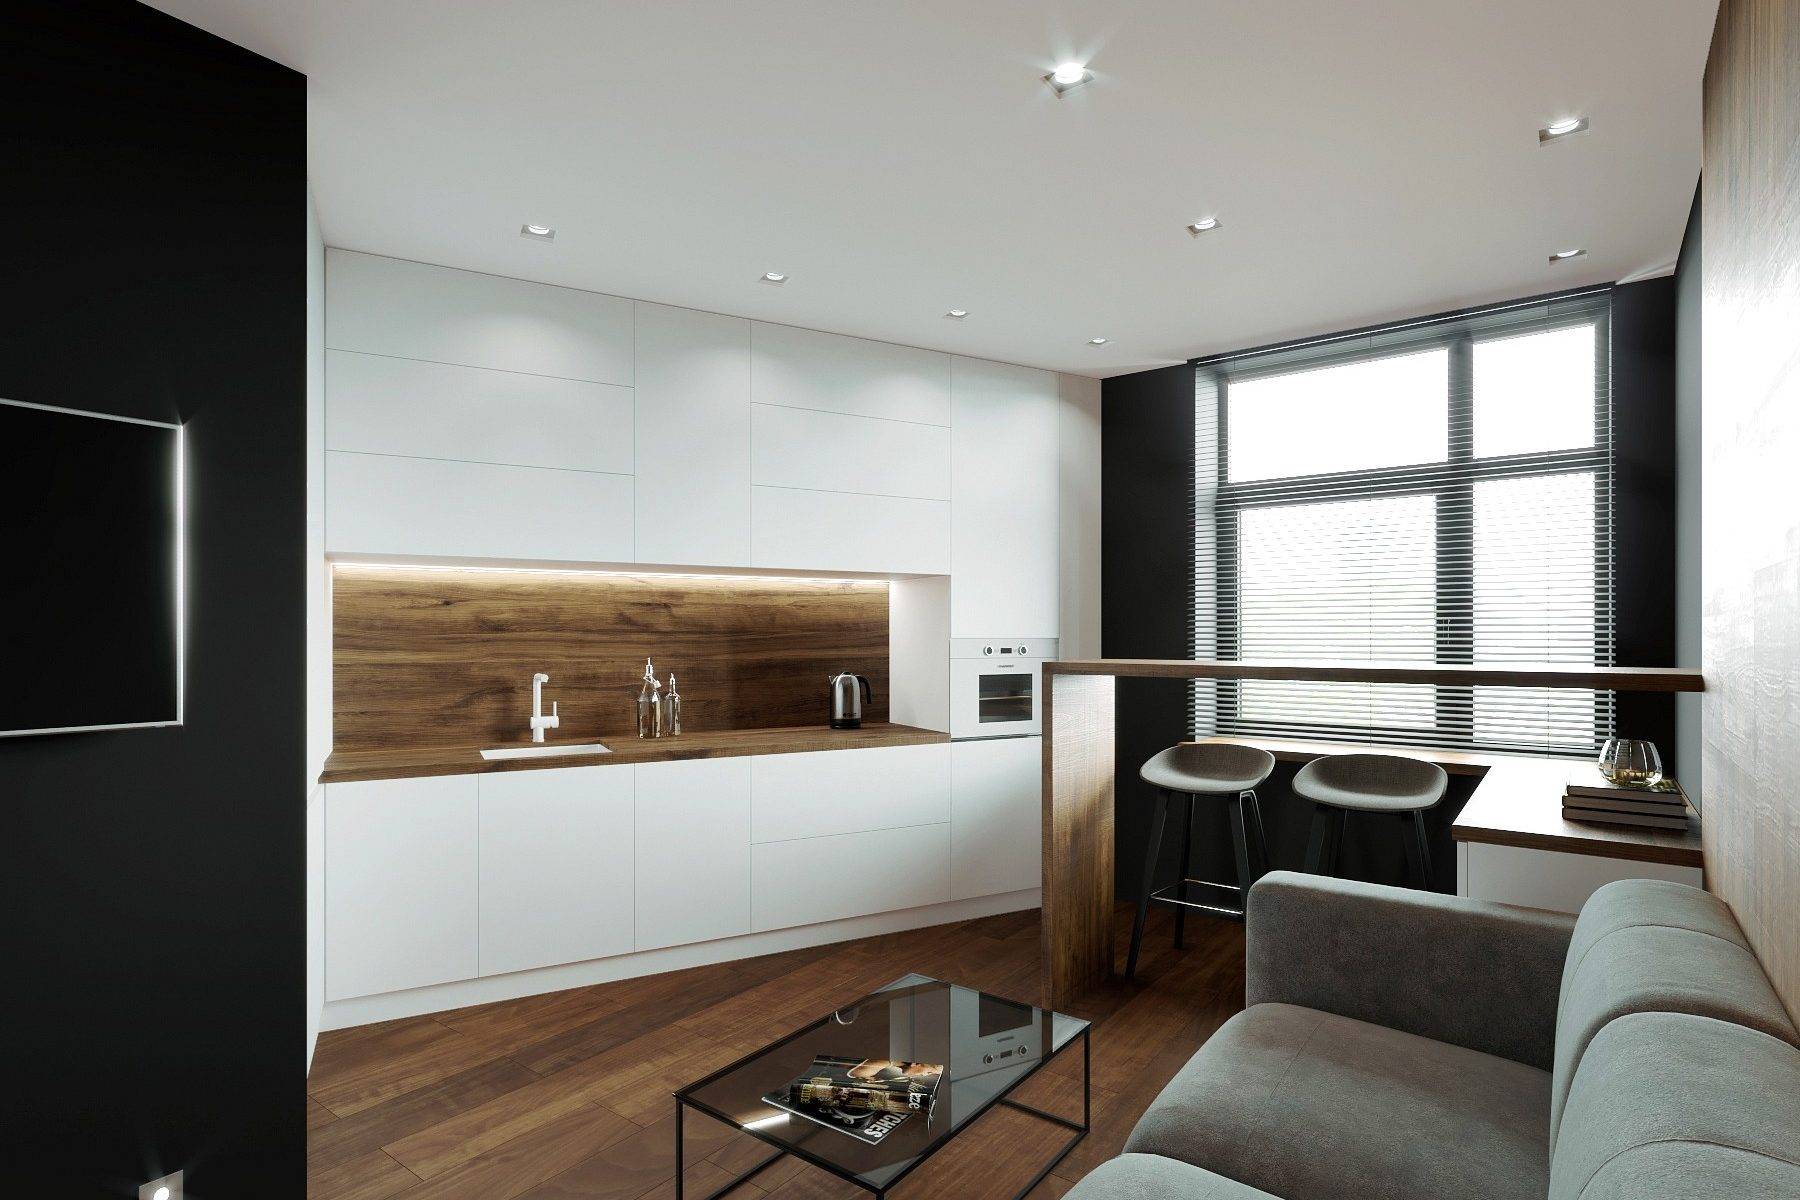 Однокомнатная квартира 60 м2, минимализм, белый интерьер